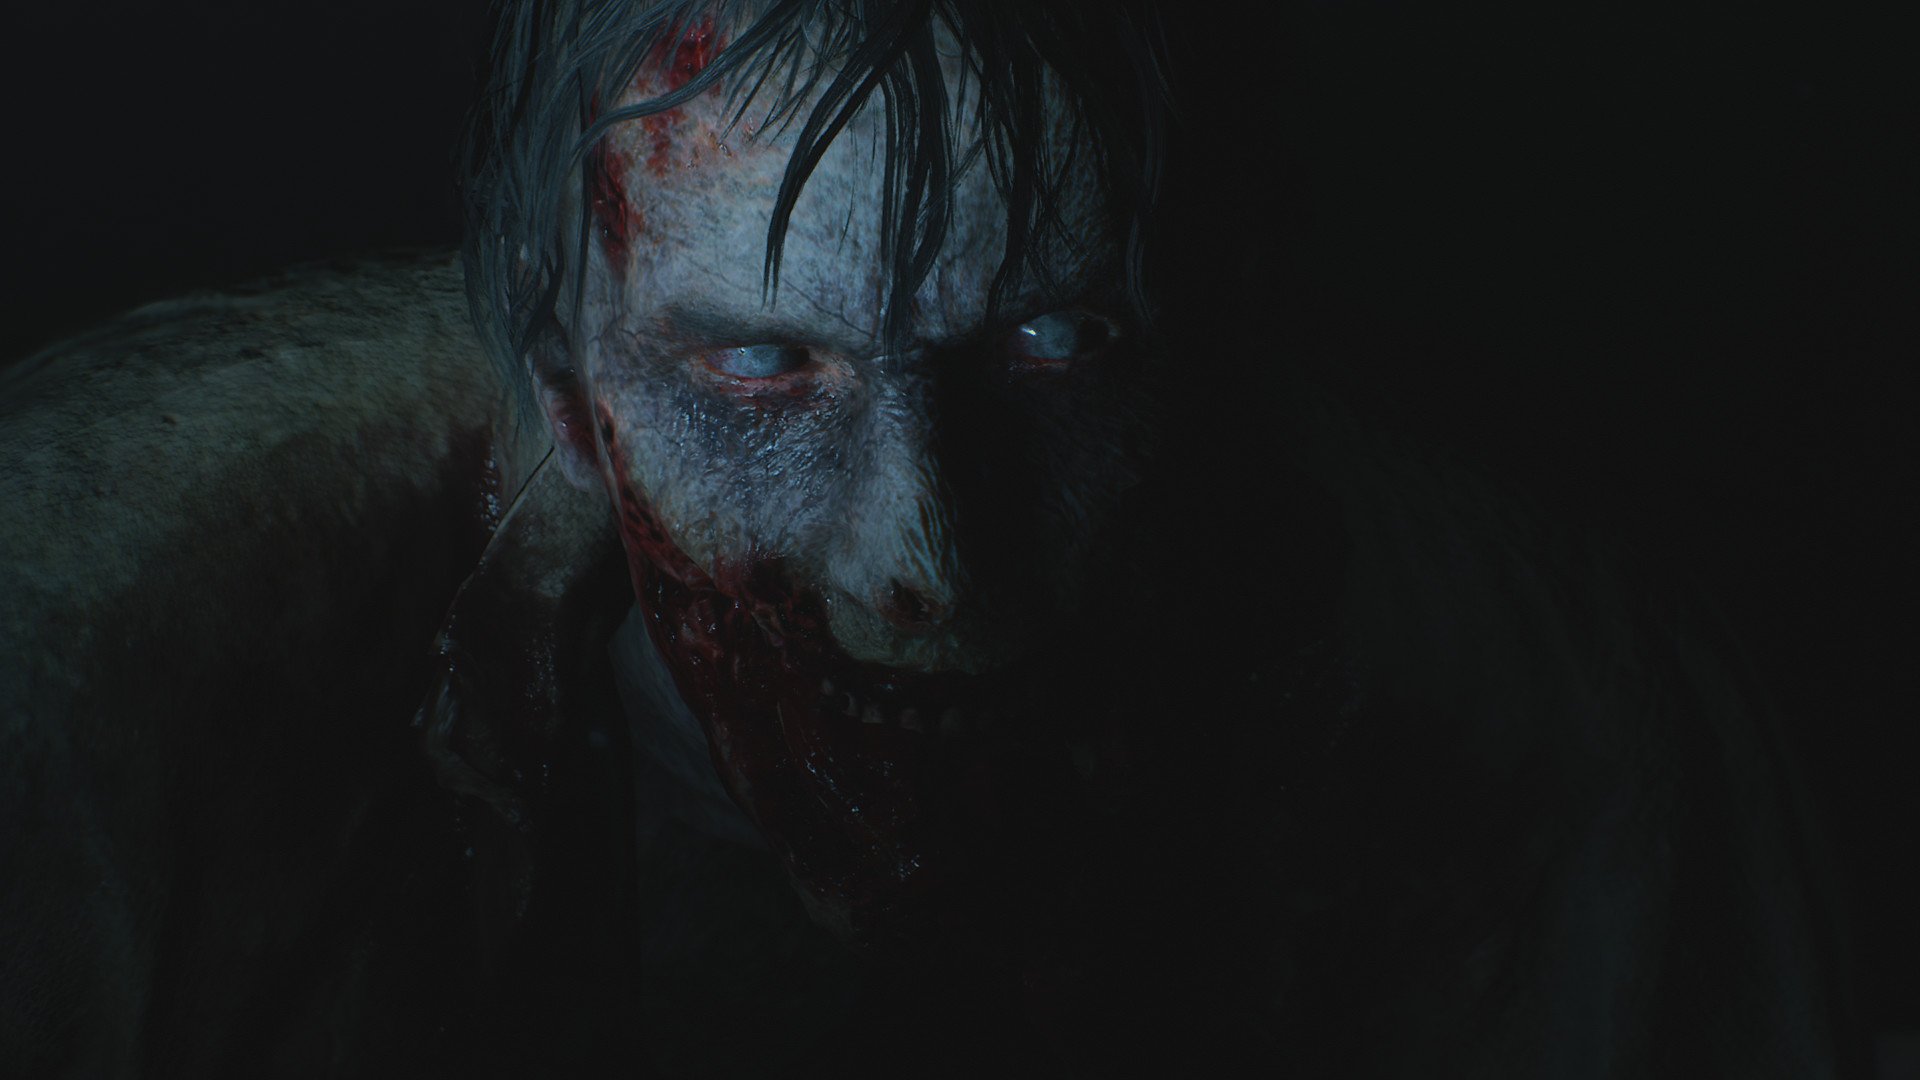 Review: 'Resident Evil 2' remake modernizes horror classic